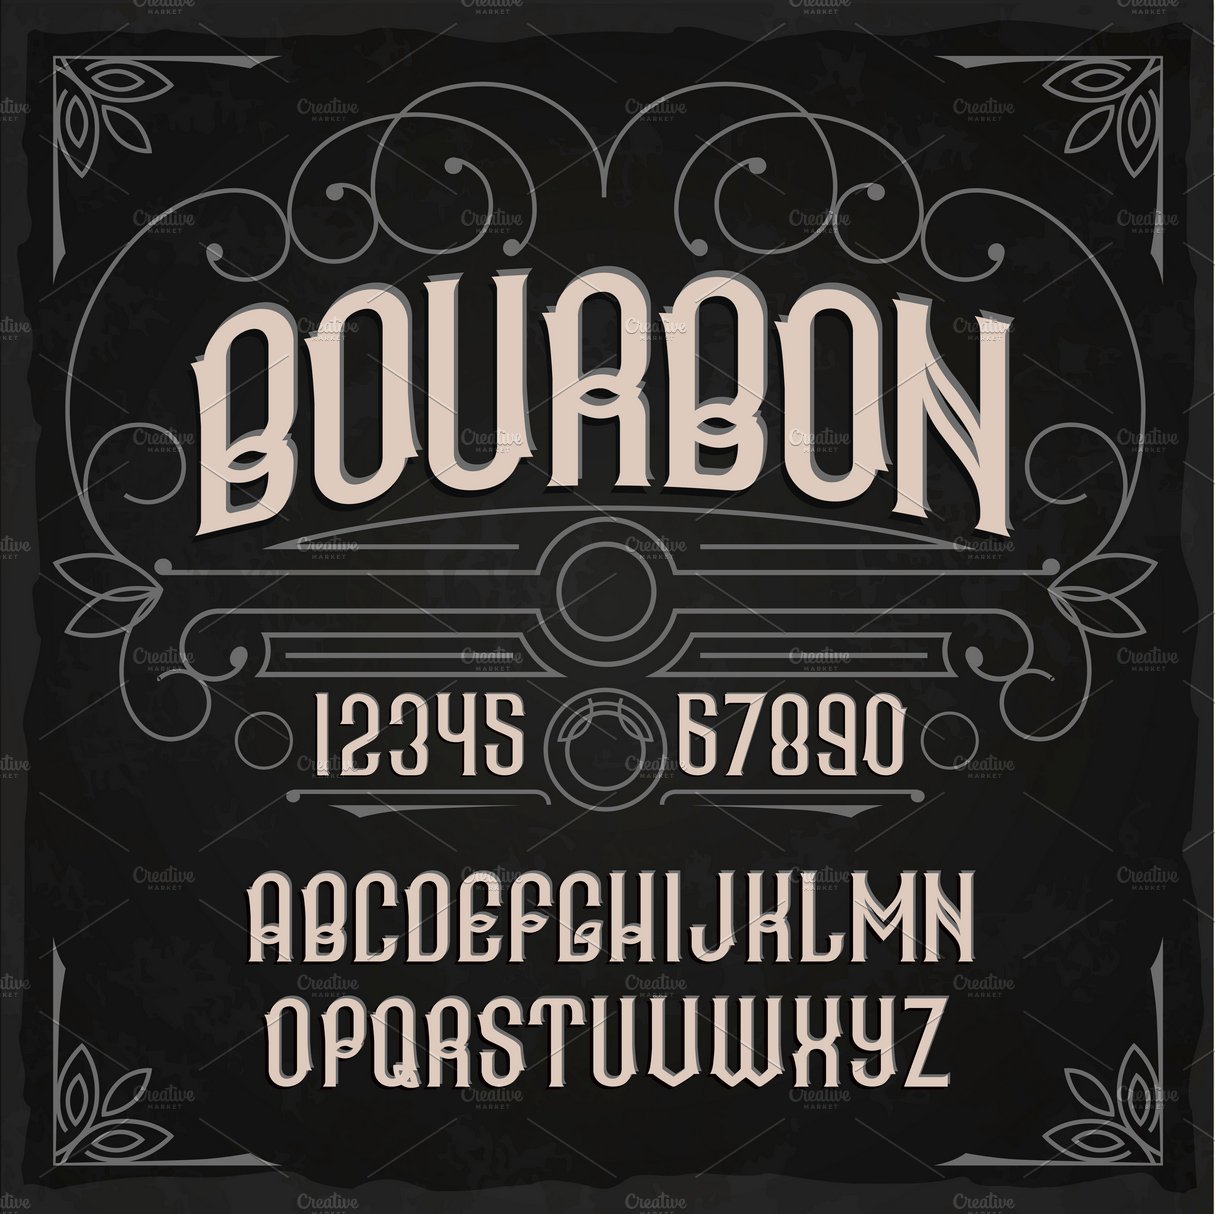 1710.a003.bourbon.s2 762